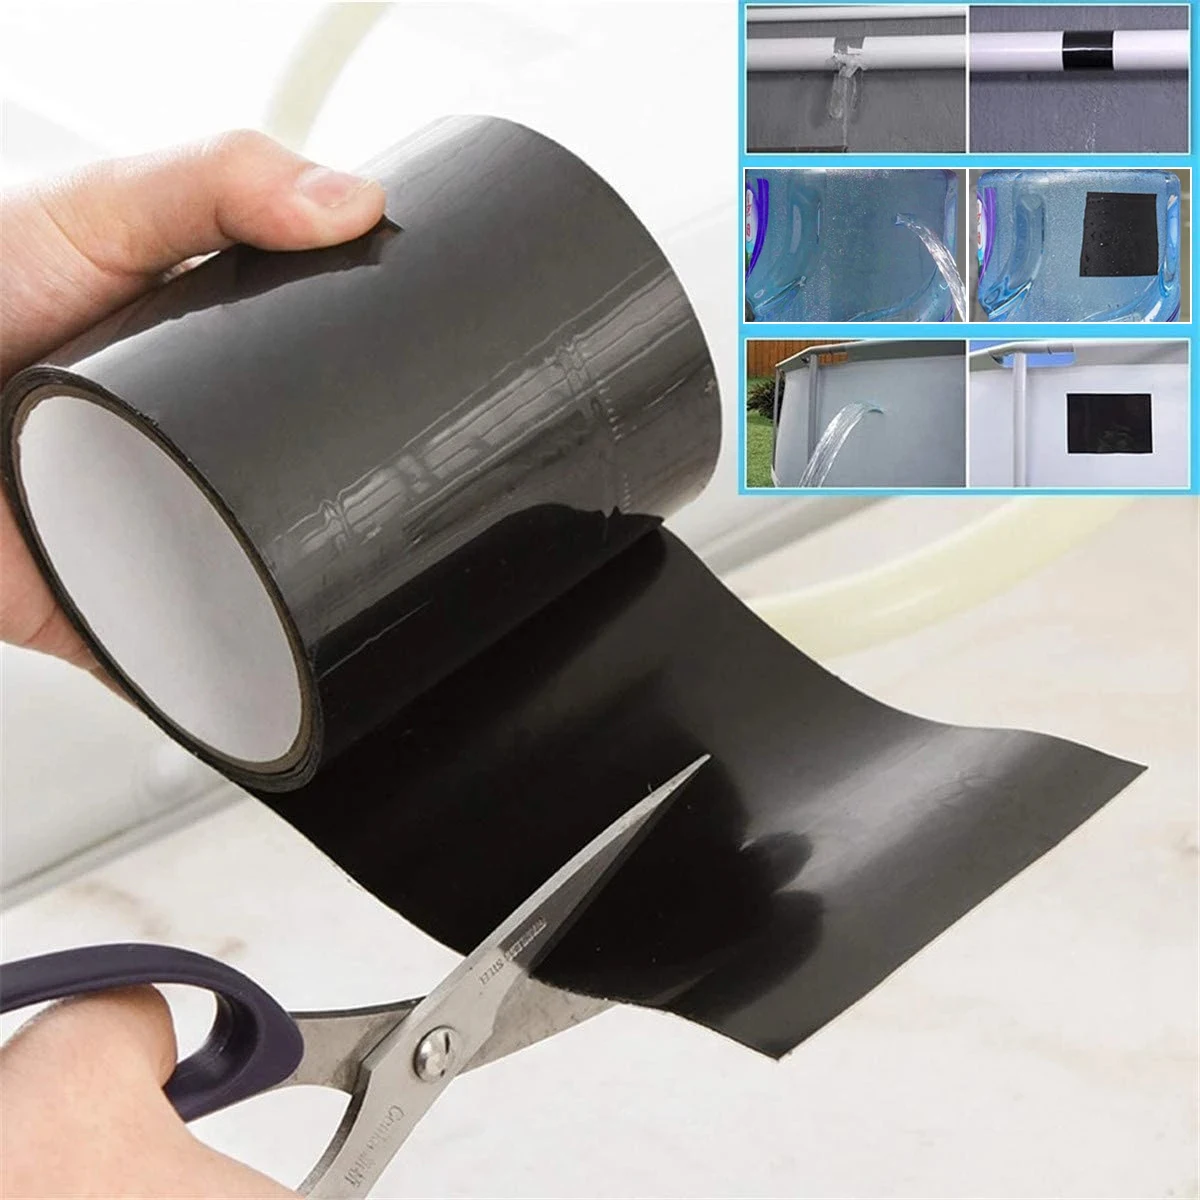 1520mm Repair Tape Super Strong Fiber Waterproof Stop Leaks Seal Performance Self Fix Tape Adhesive Duct Tape Repair The Gap